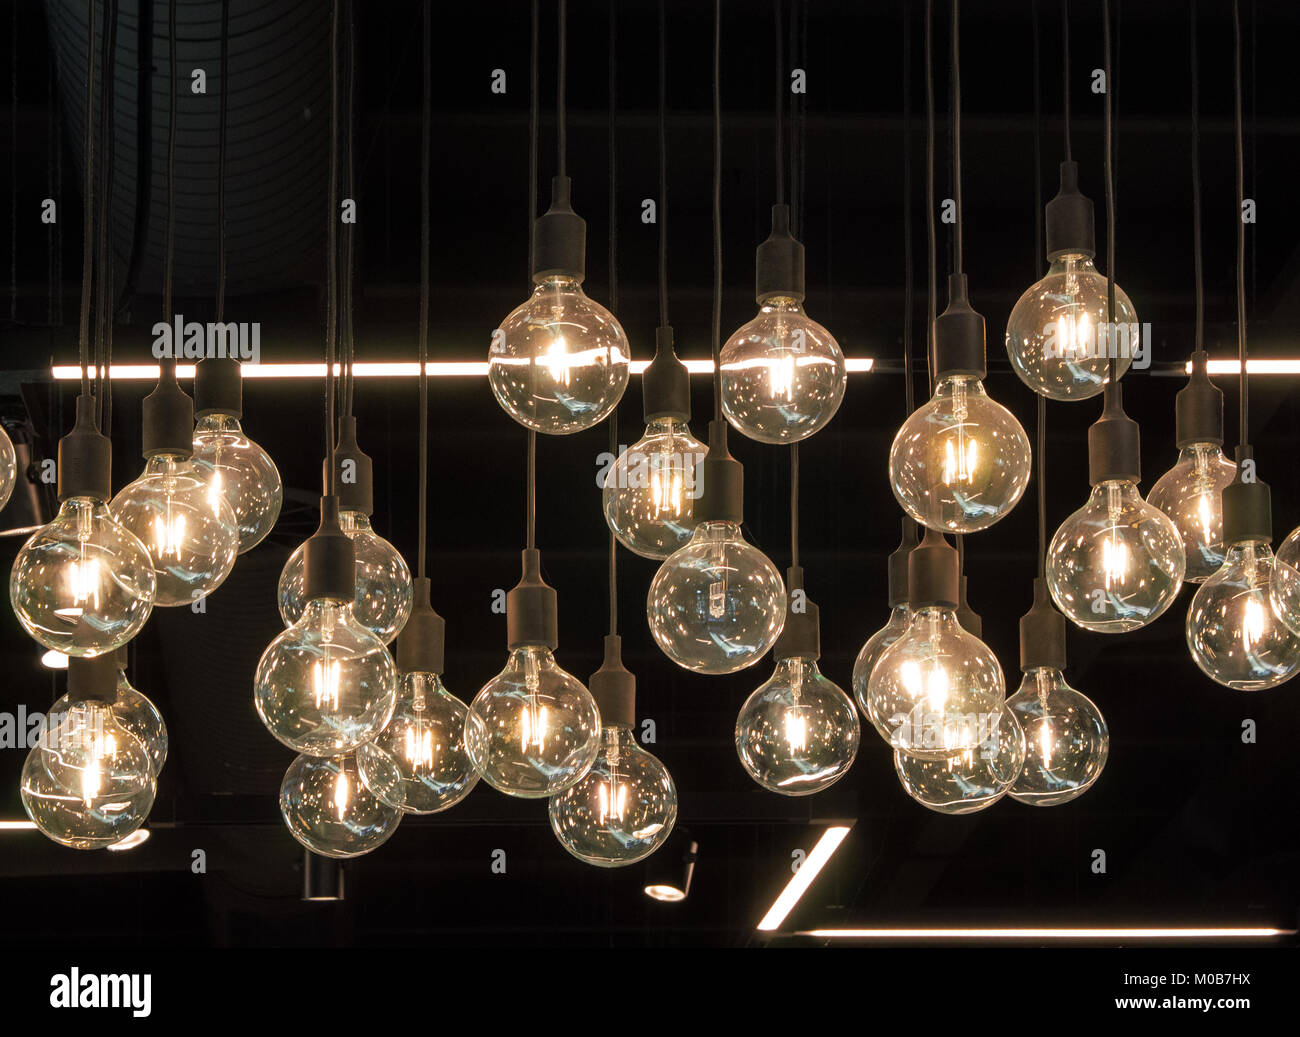 Die erstaunliche Wirkung von Dutzenden von LED-Lampen in einem dunklen Zimmer Stockfoto